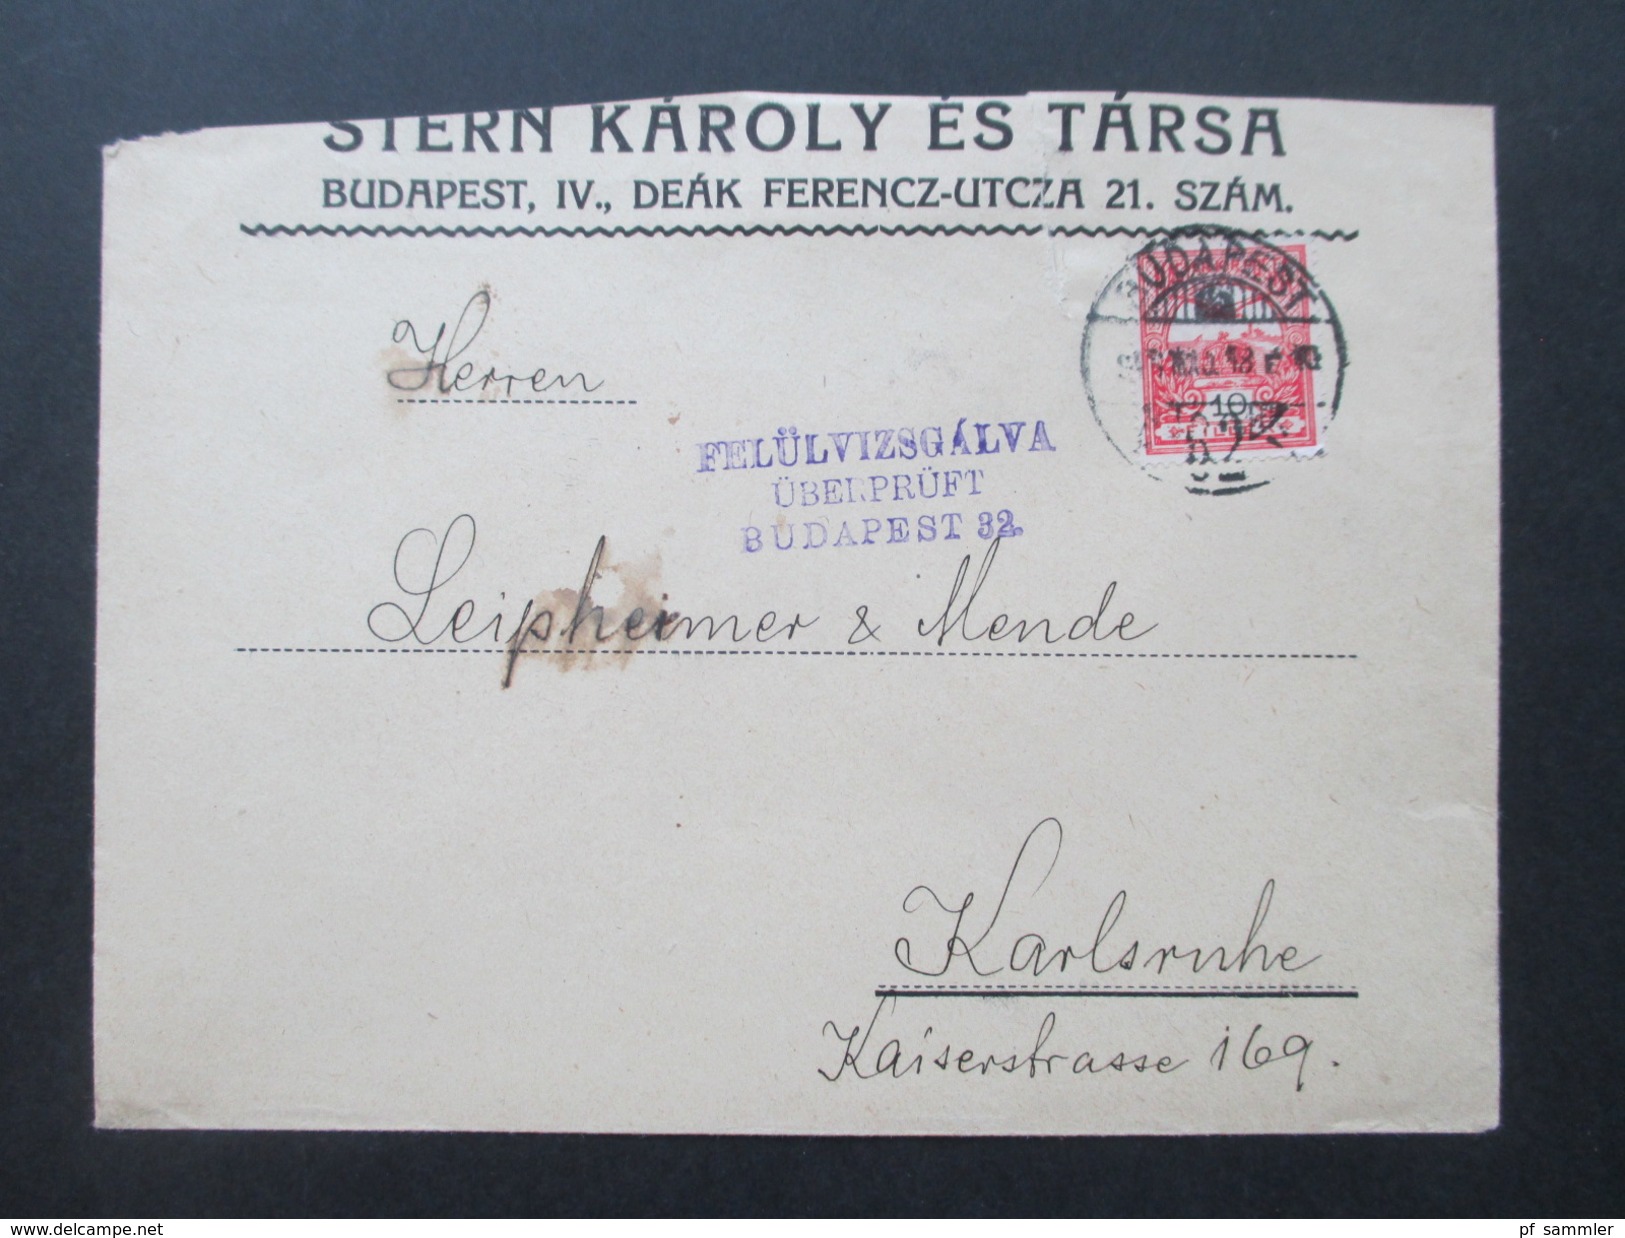 Ungarn 1918 Beleg / Zensutbeleg. Felülvizsgalva überprüft Budapest 32. Nach Karlsruhe. - Covers & Documents